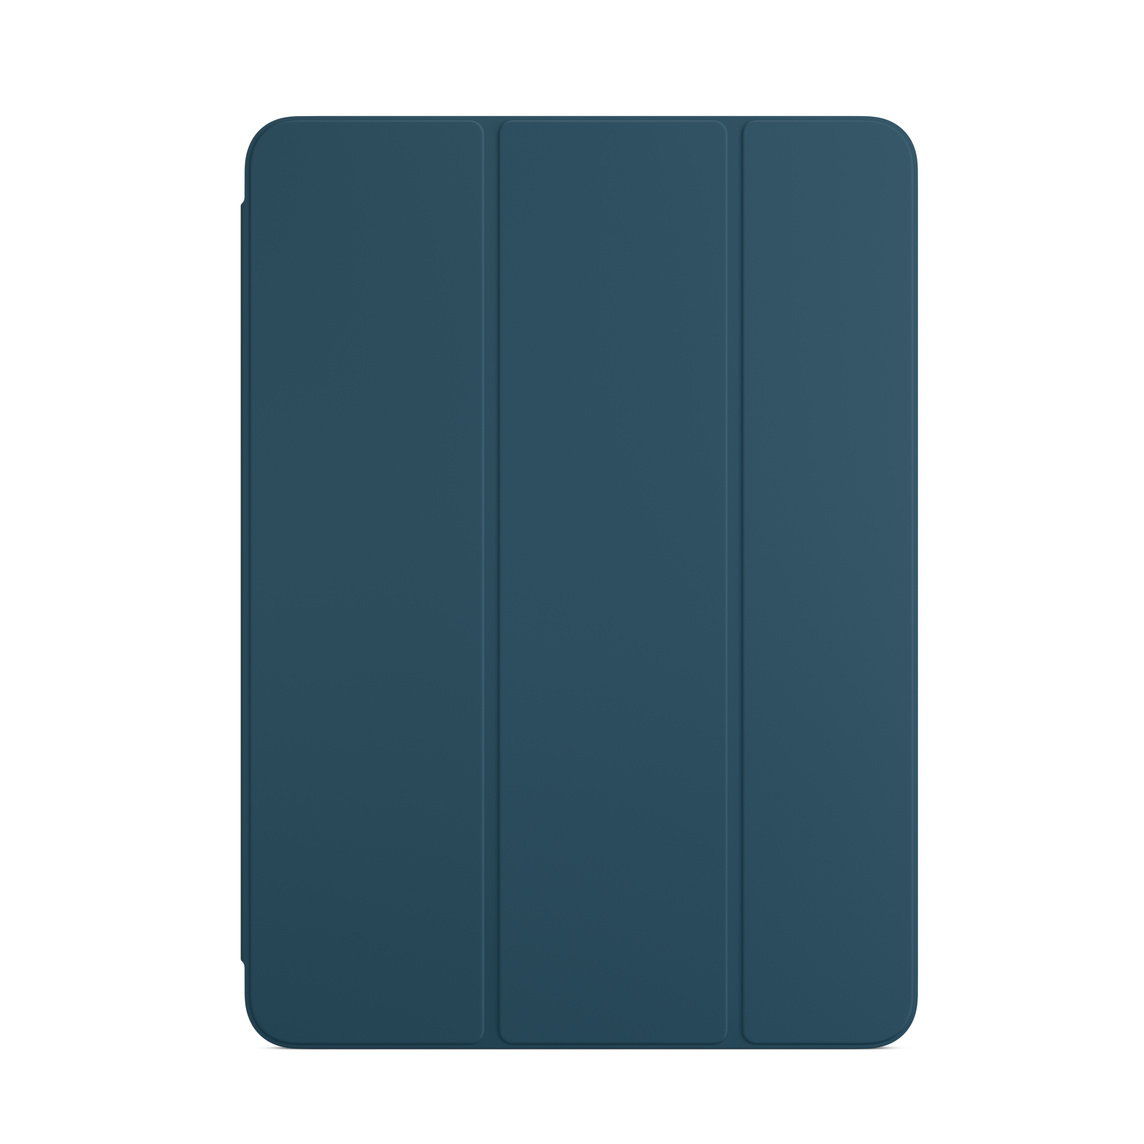 适用于 iPad Air 的海蓝色智能双面夹。